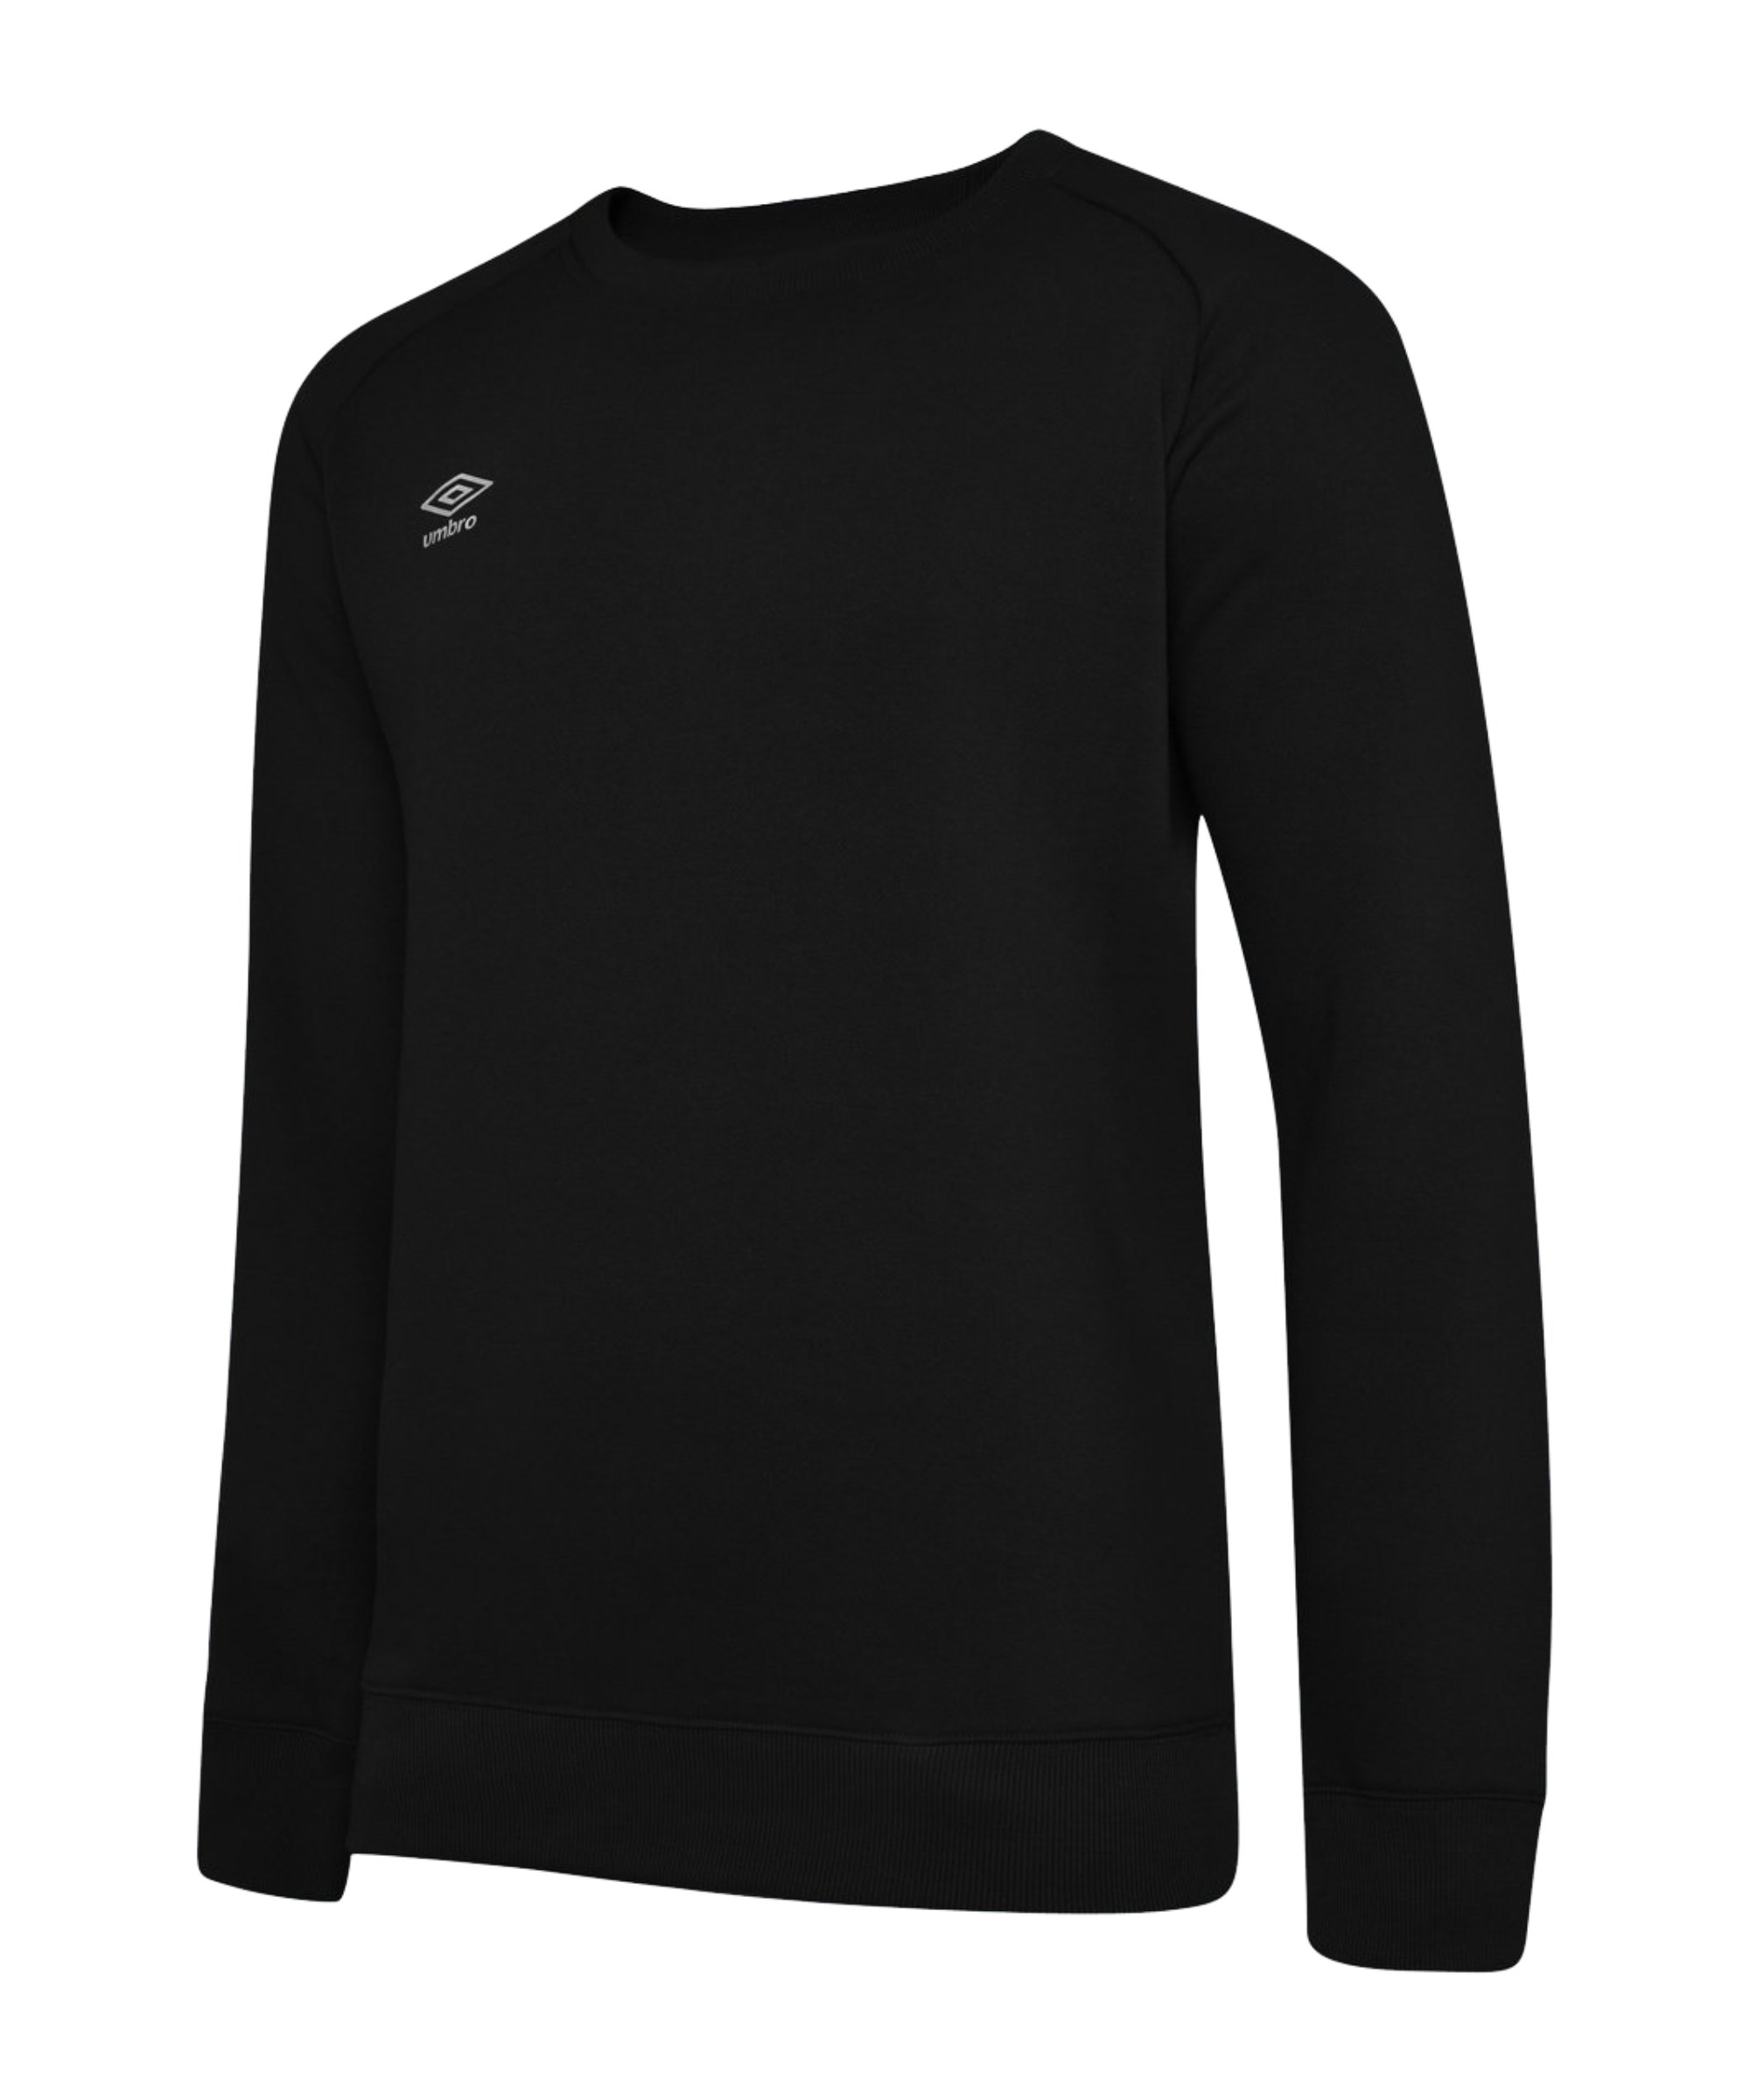 Umbro Club Leisure Damen Sweatshirt Schwarz F090 - schwarz